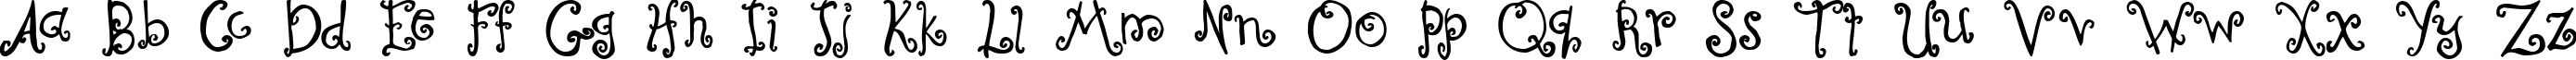 Пример написания английского алфавита шрифтом Curly Coryphaeus